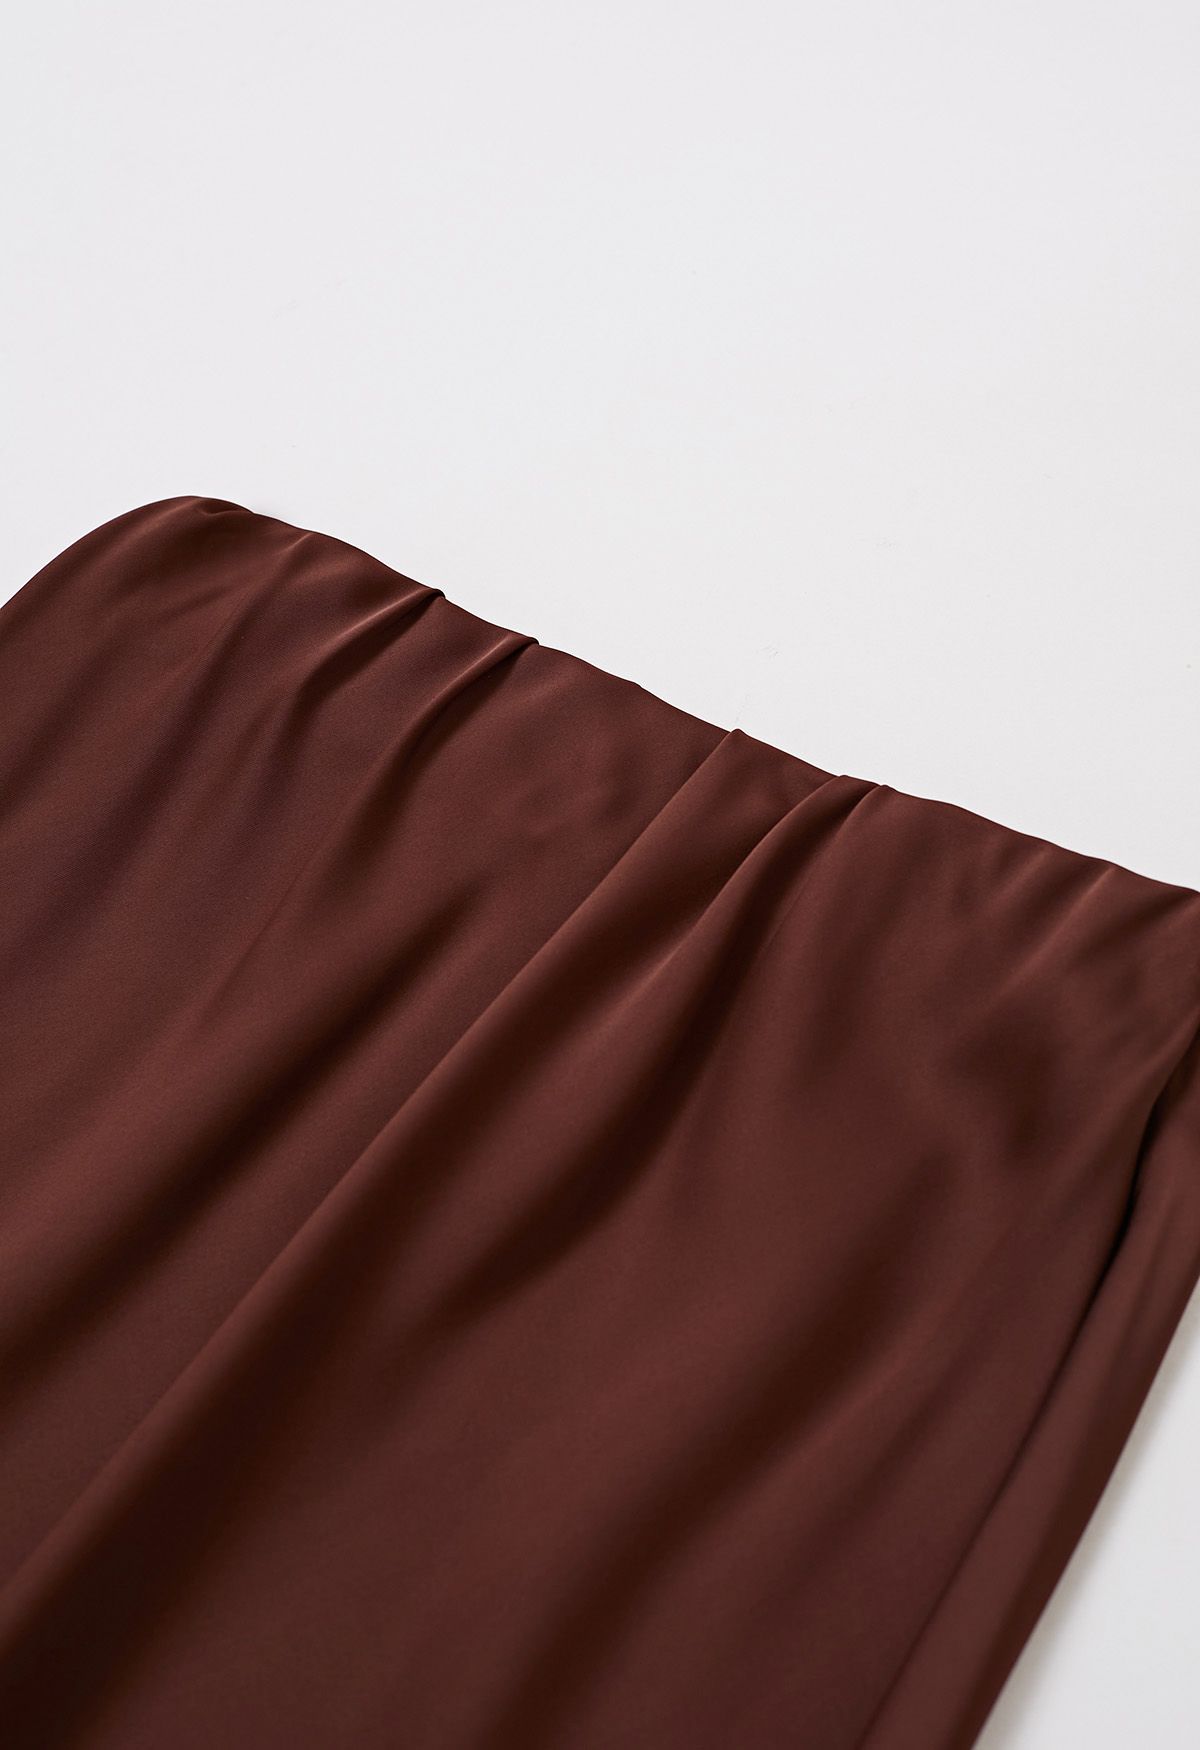 Falda larga de sirena con acabado satinado en color burdeos